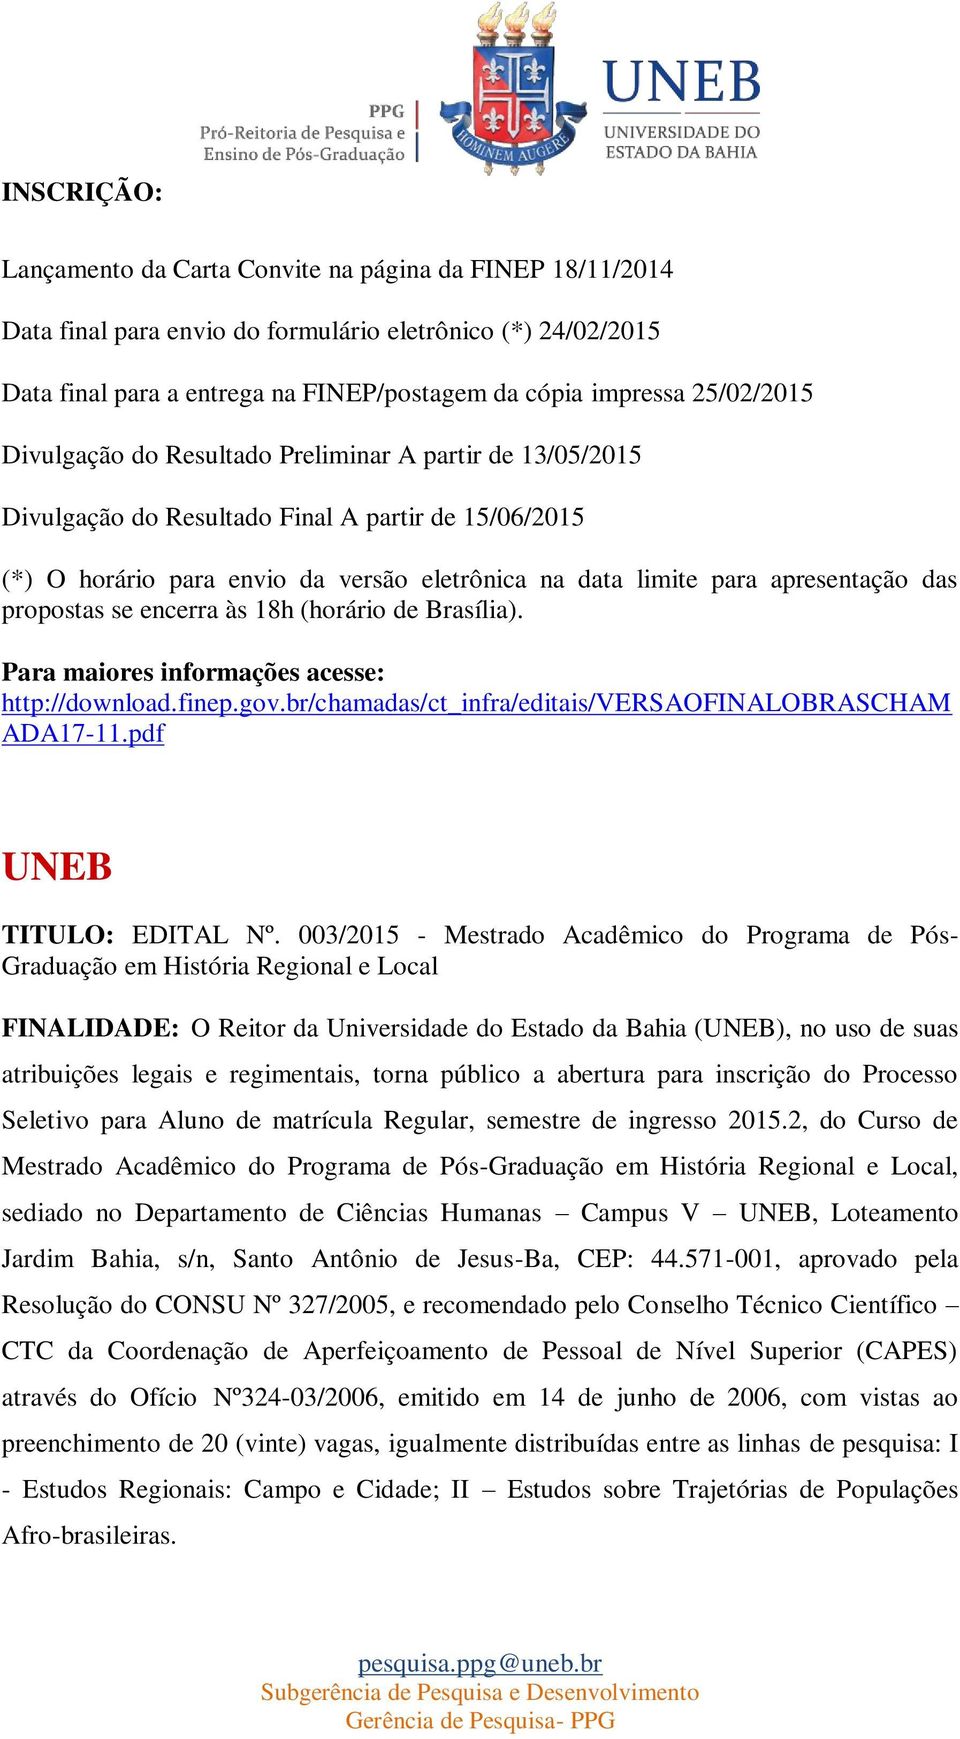 apresentação das propostas se encerra às 18h (horário de Brasília). Para maiores informações acesse: http://download.finep.gov.br/chamadas/ct_infra/editais/versaofinalobrascham ADA17-11.